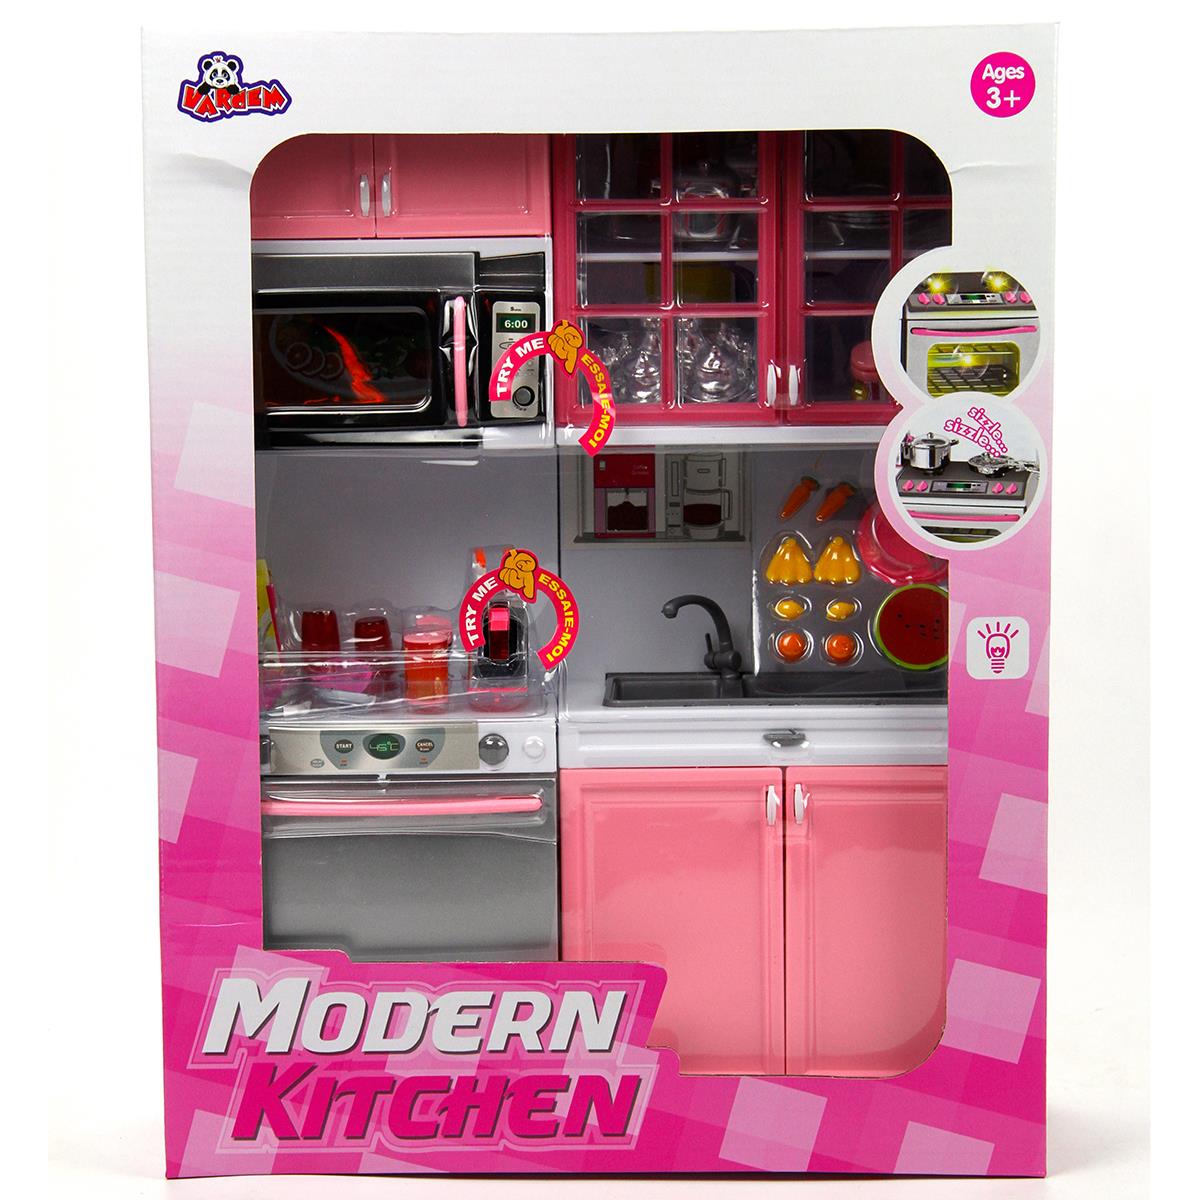 Vardem Modern Mutfak Seti 3+ Yaş